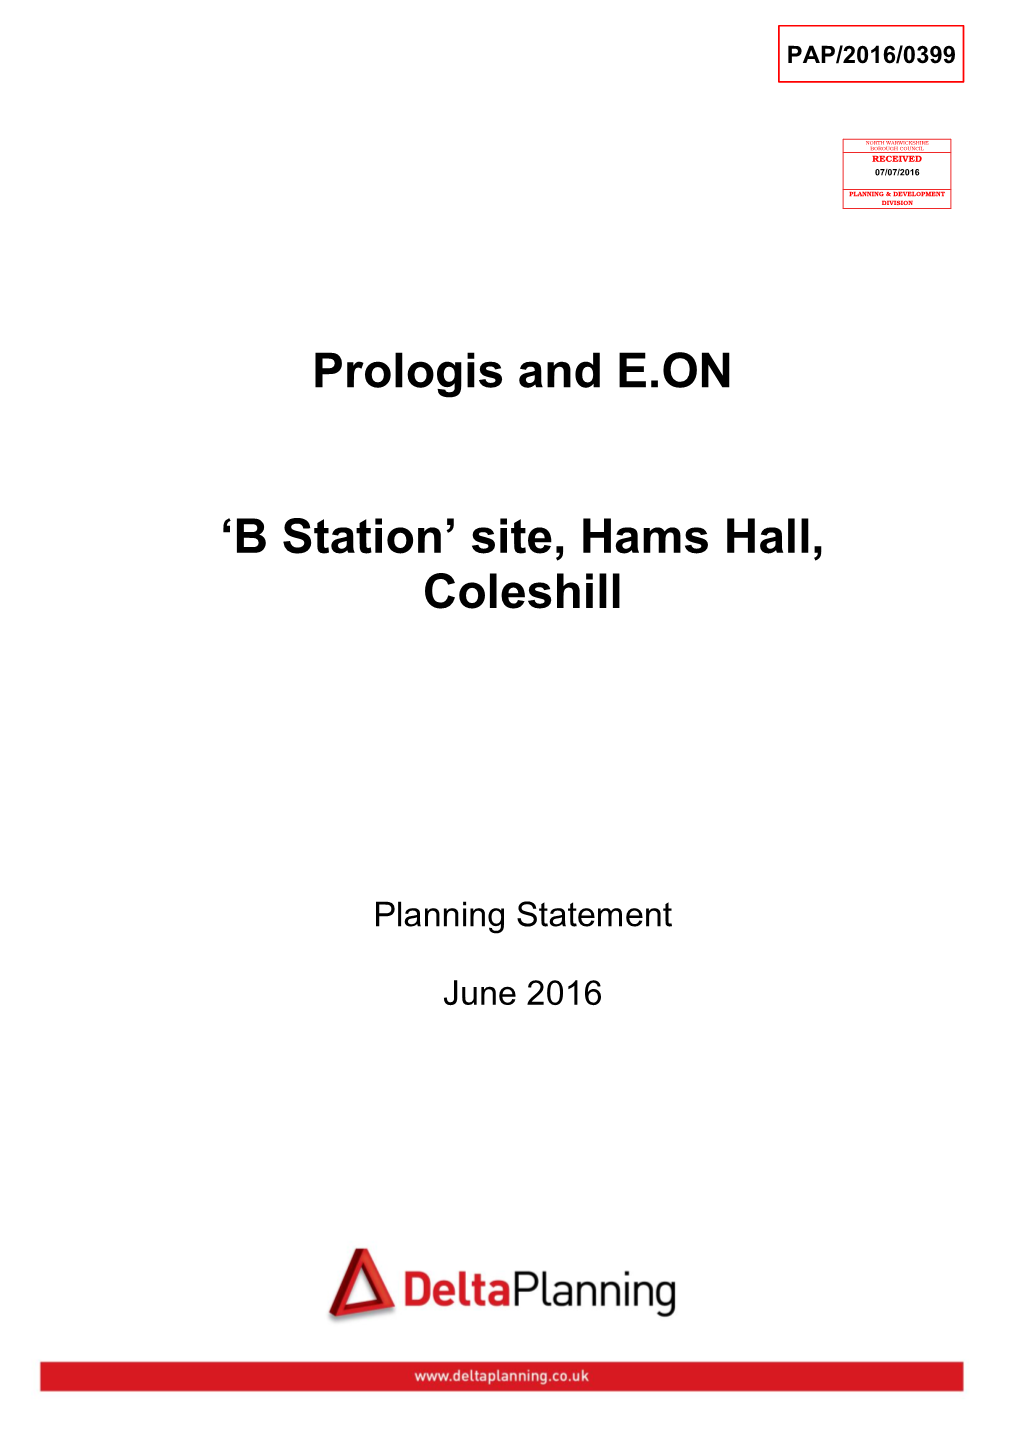 Prologis and E.ON 'B Station' Site, Hams Hall, Coleshill